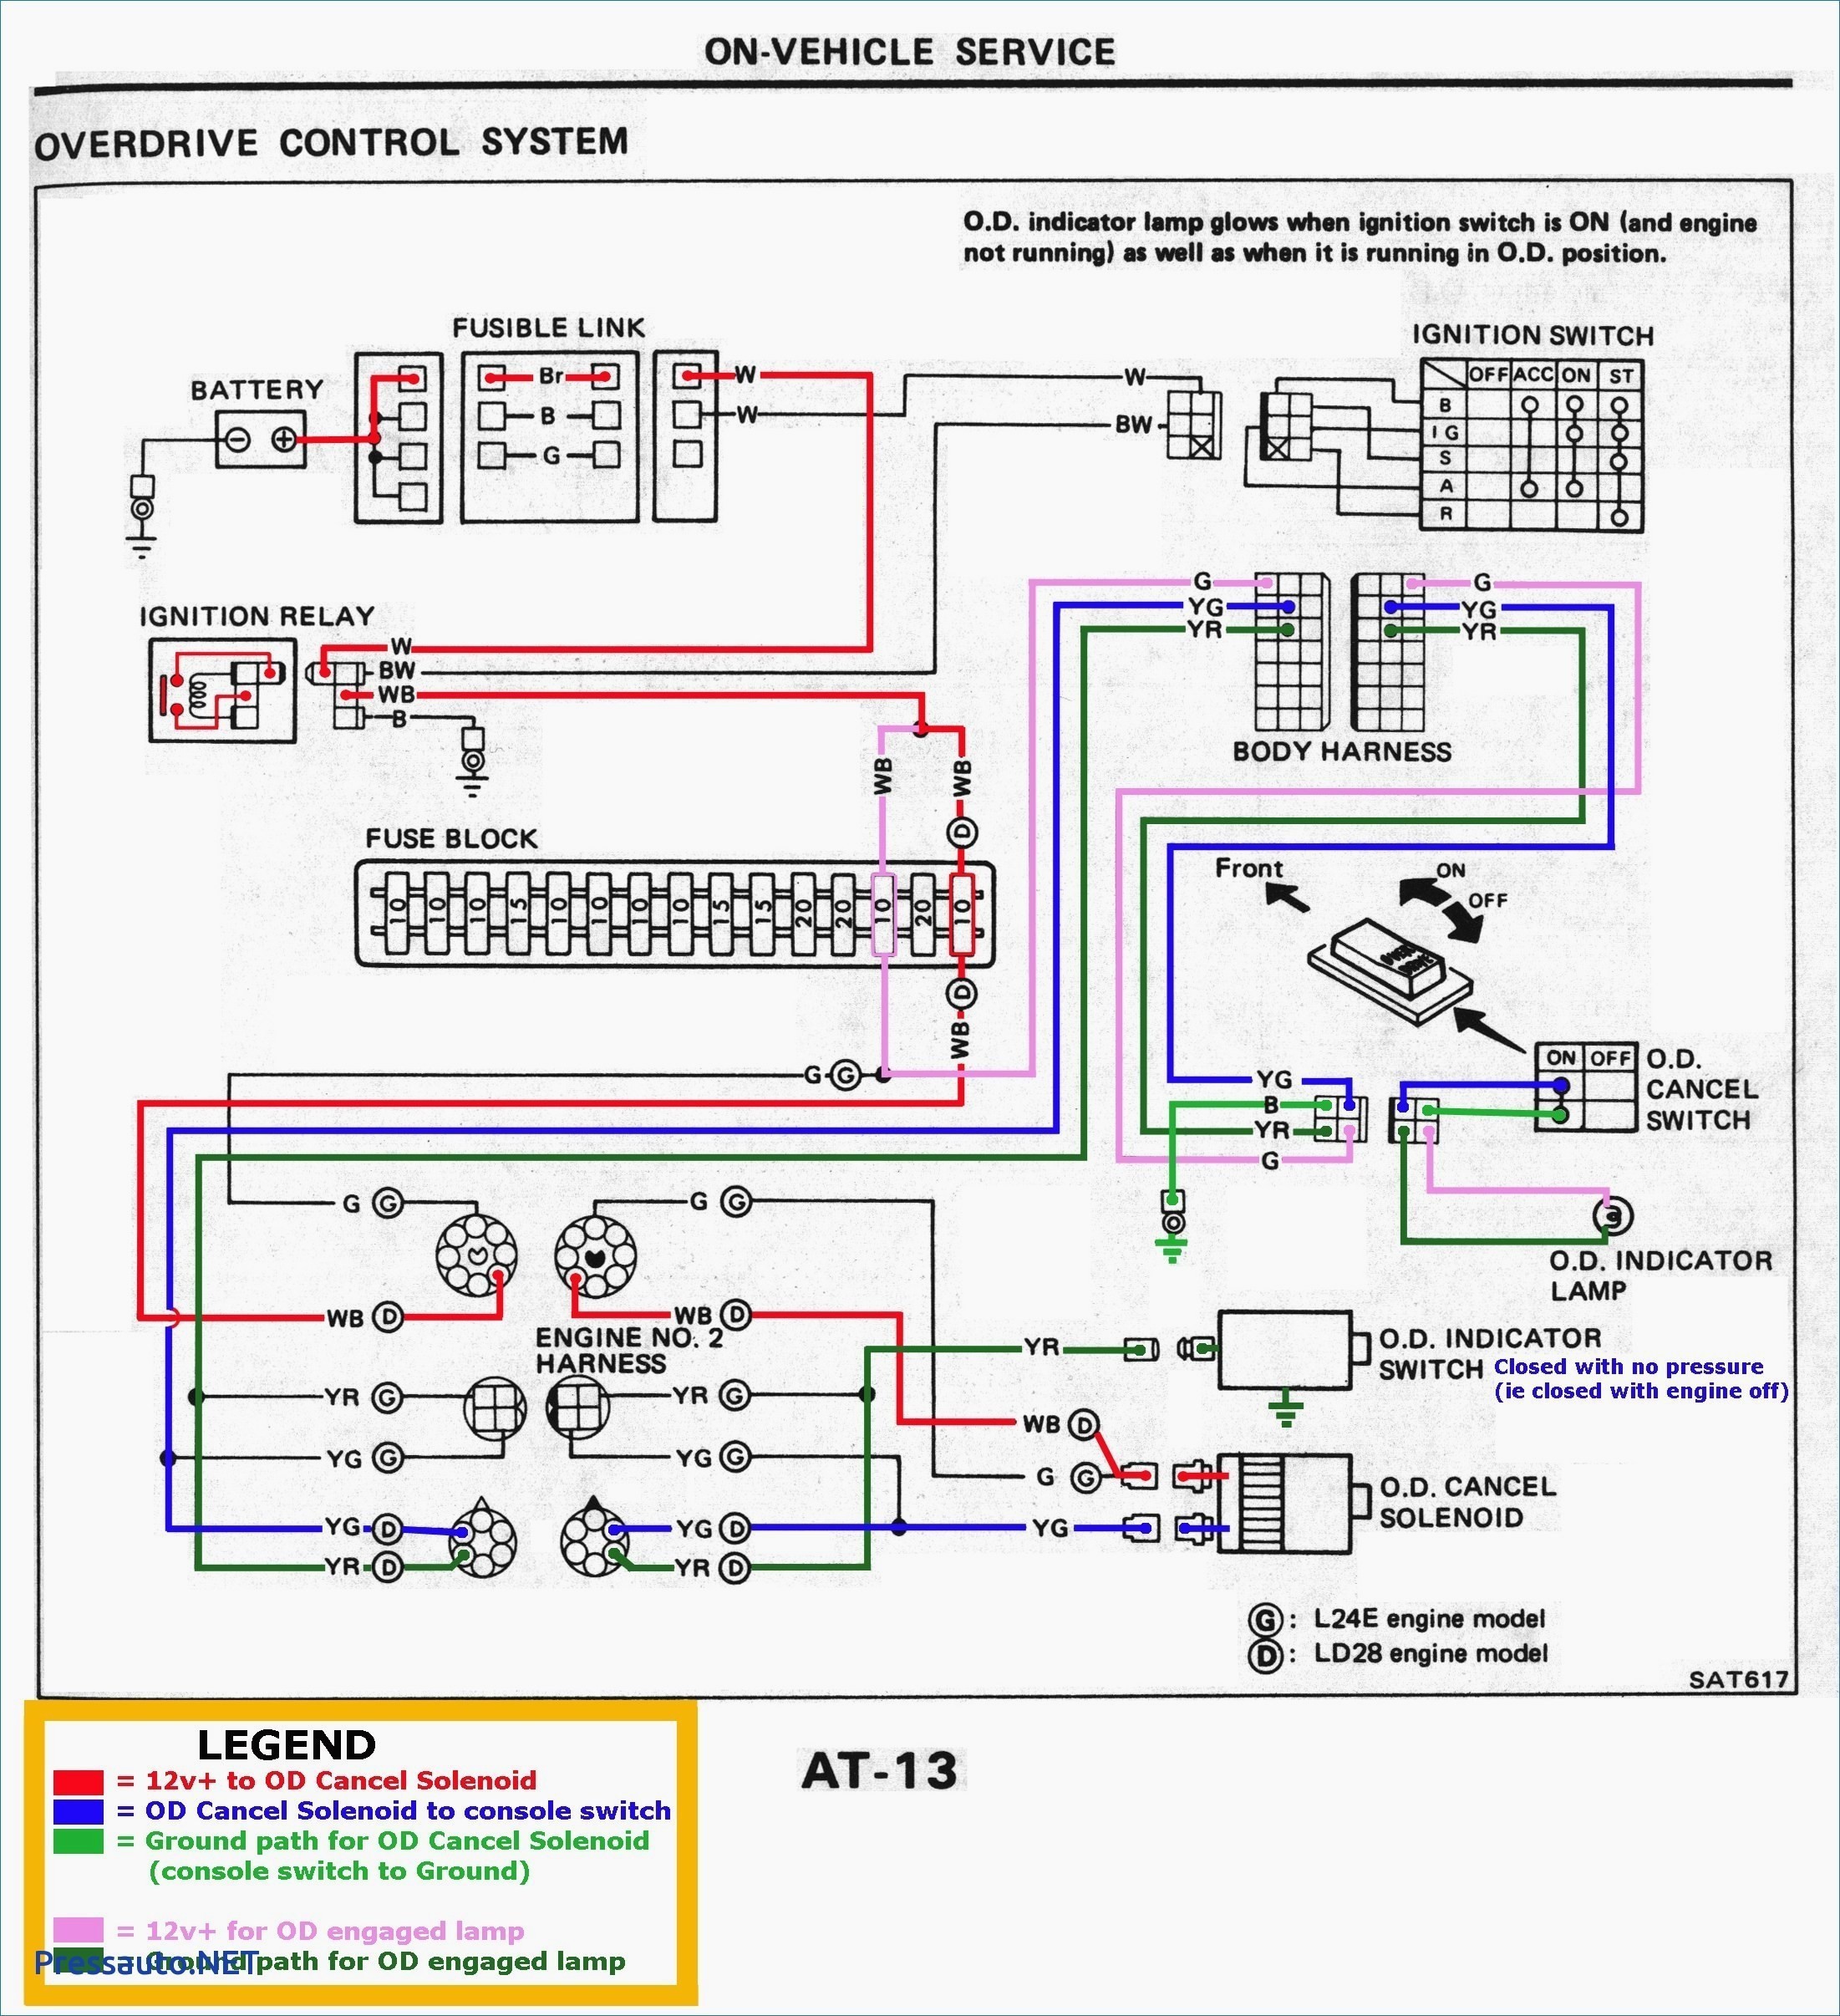 Simple Steam Engine Diagram Simple Engine Diagram Experts Wiring Diagram • Of Simple Steam Engine Diagram